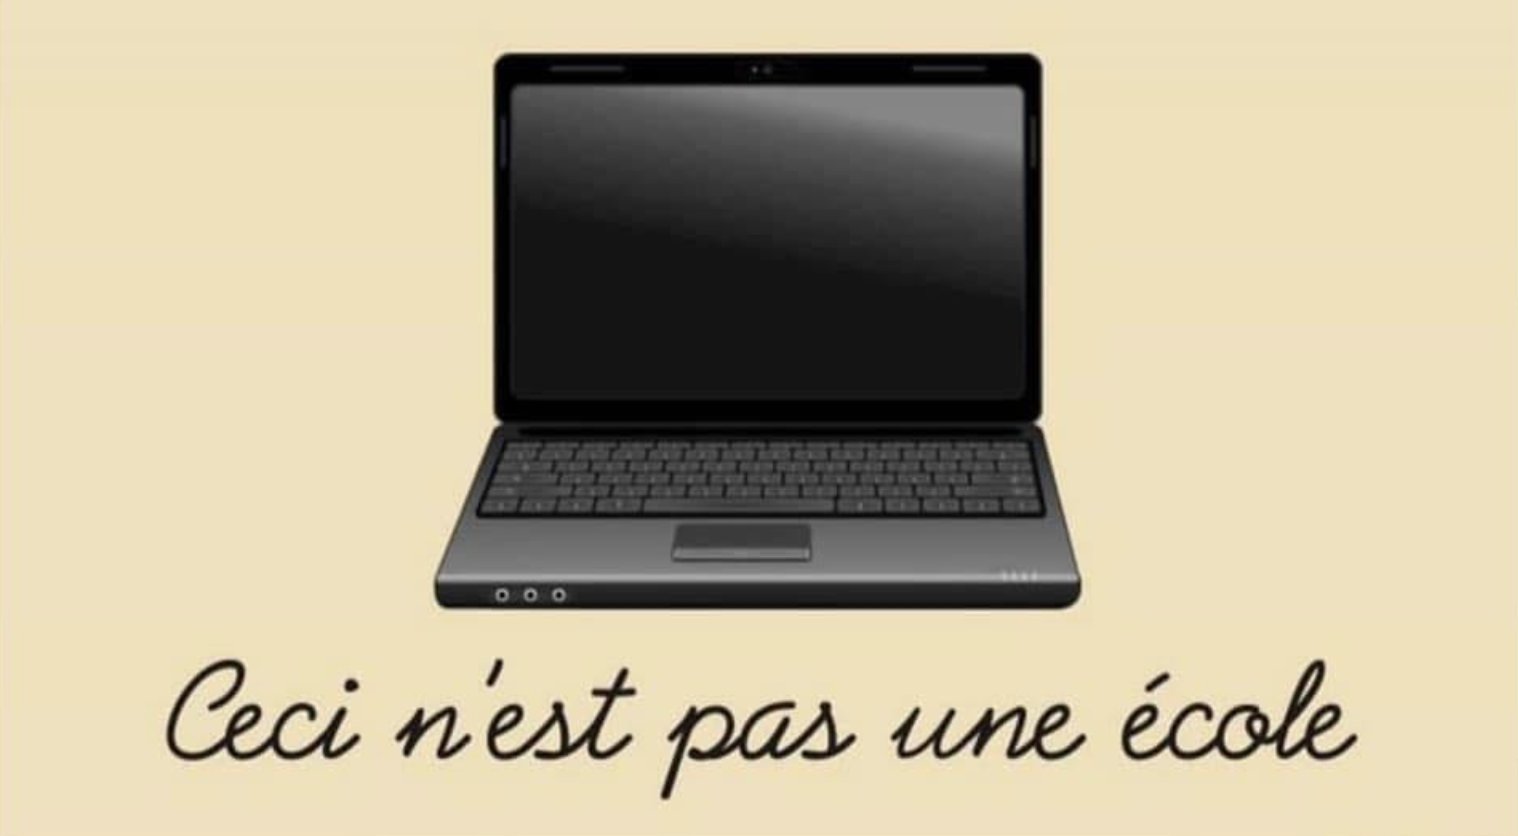 Una computadora portátil. Abajo dice en francés: «Esta no es una escuela» (Ceci n'est pas une ecole).